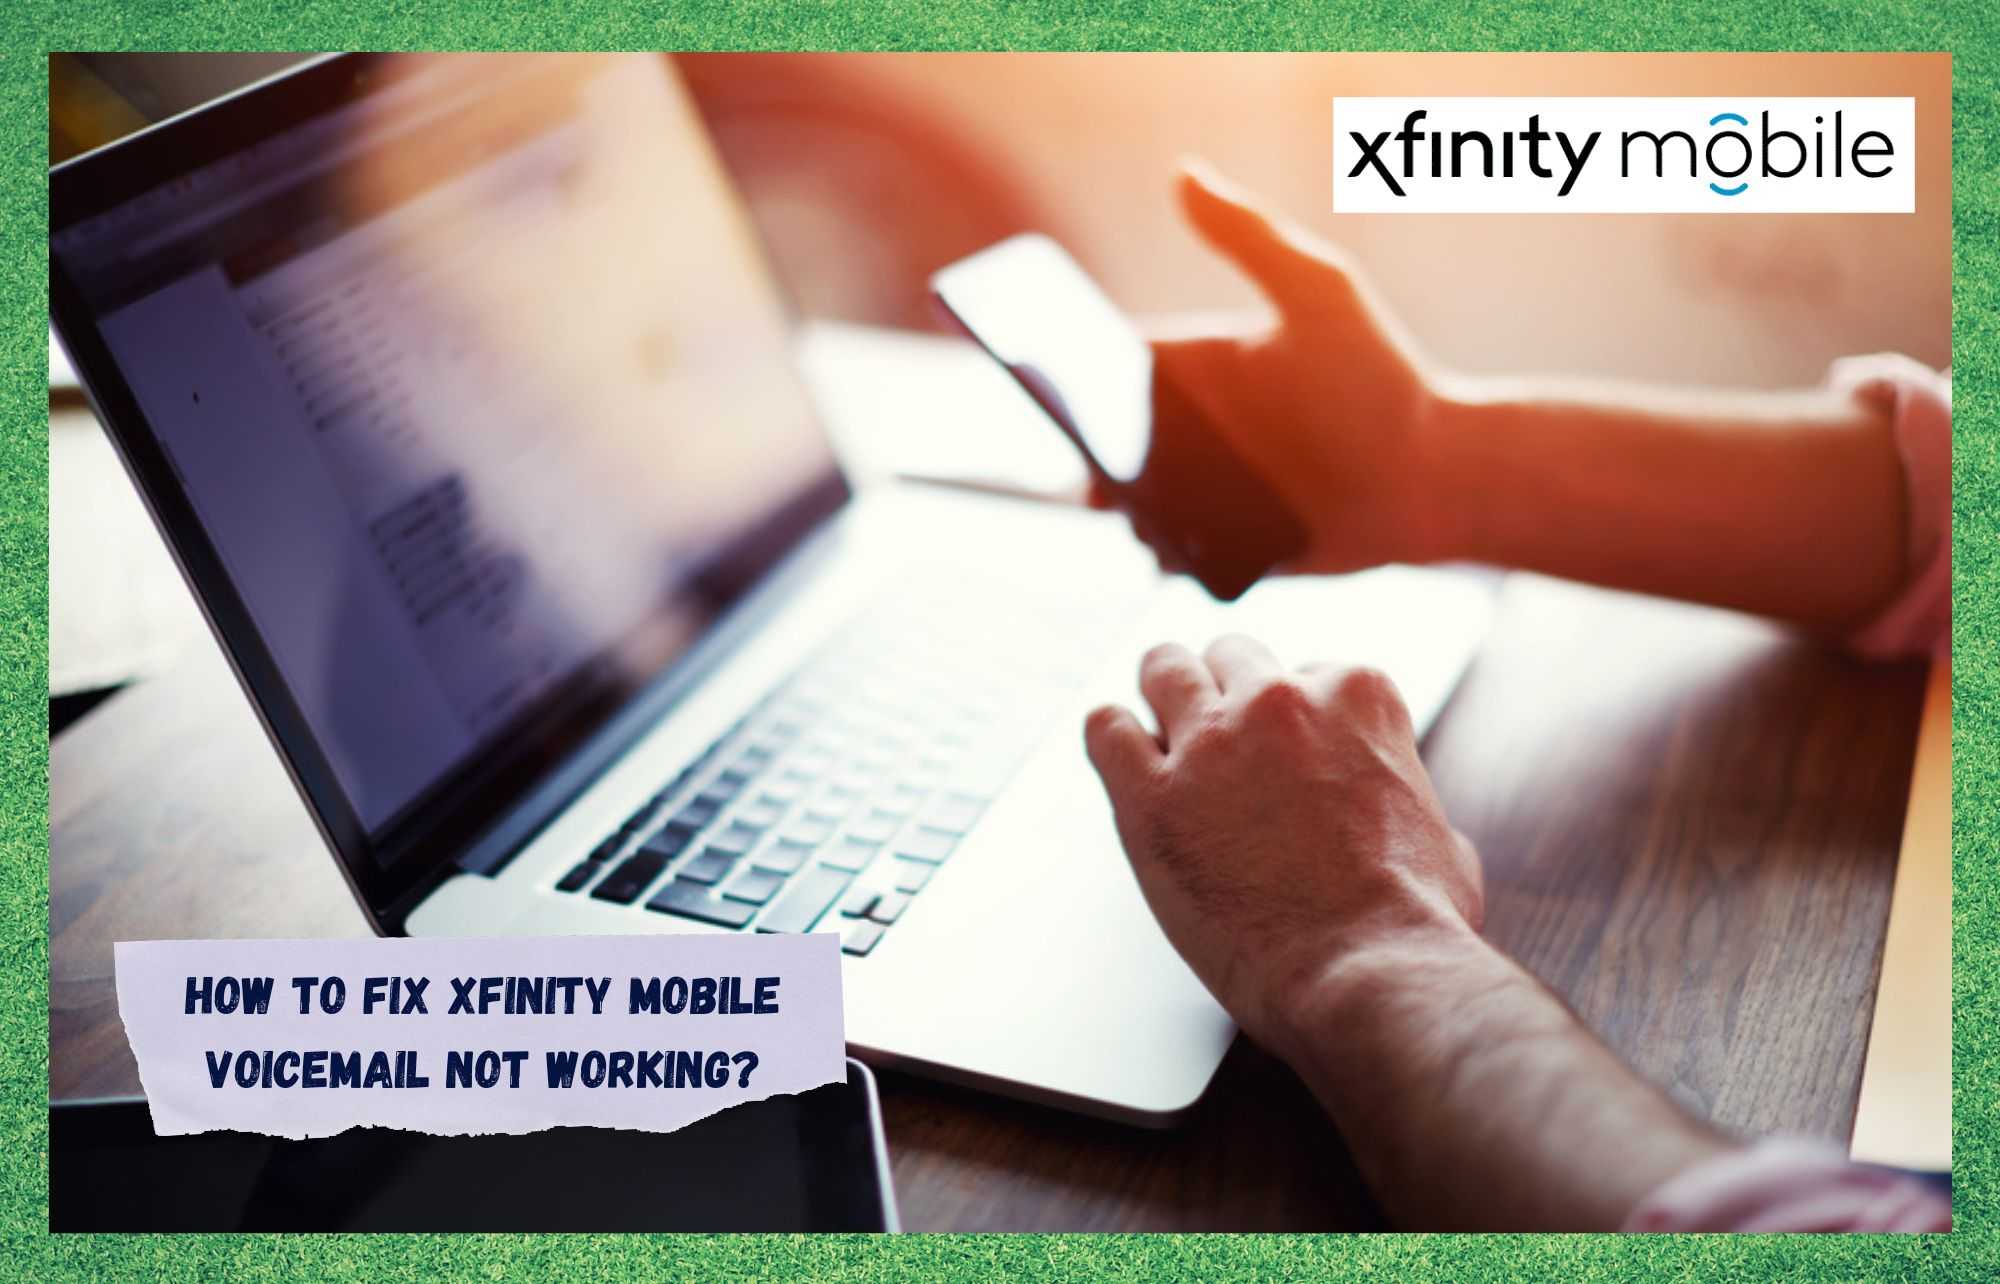 Xfinity மொபைல் வாய்ஸ்மெயில் வேலை செய்யவில்லை: சரிசெய்வதற்கான 6 வழிகள்